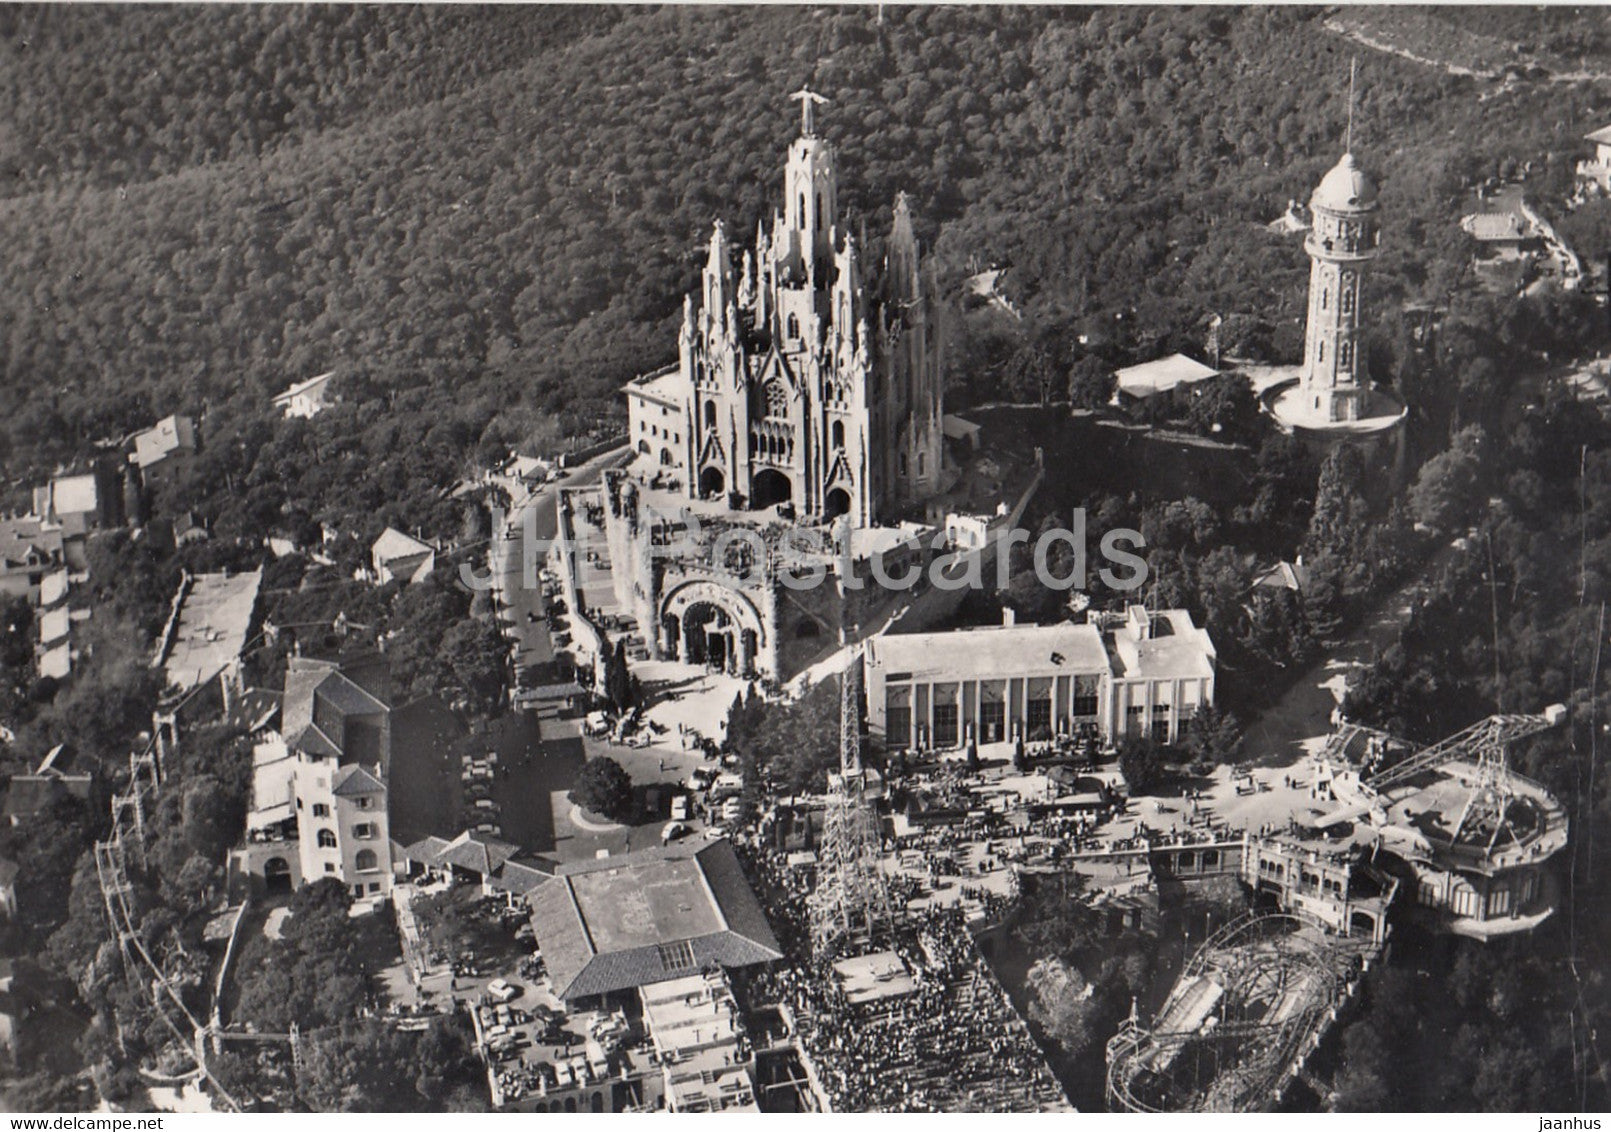 Barcelona - Tibidabo - Basilica Nacional Exp del Sagrado Corazon de Jesus - cathedral - Spain - used - JH Postcards